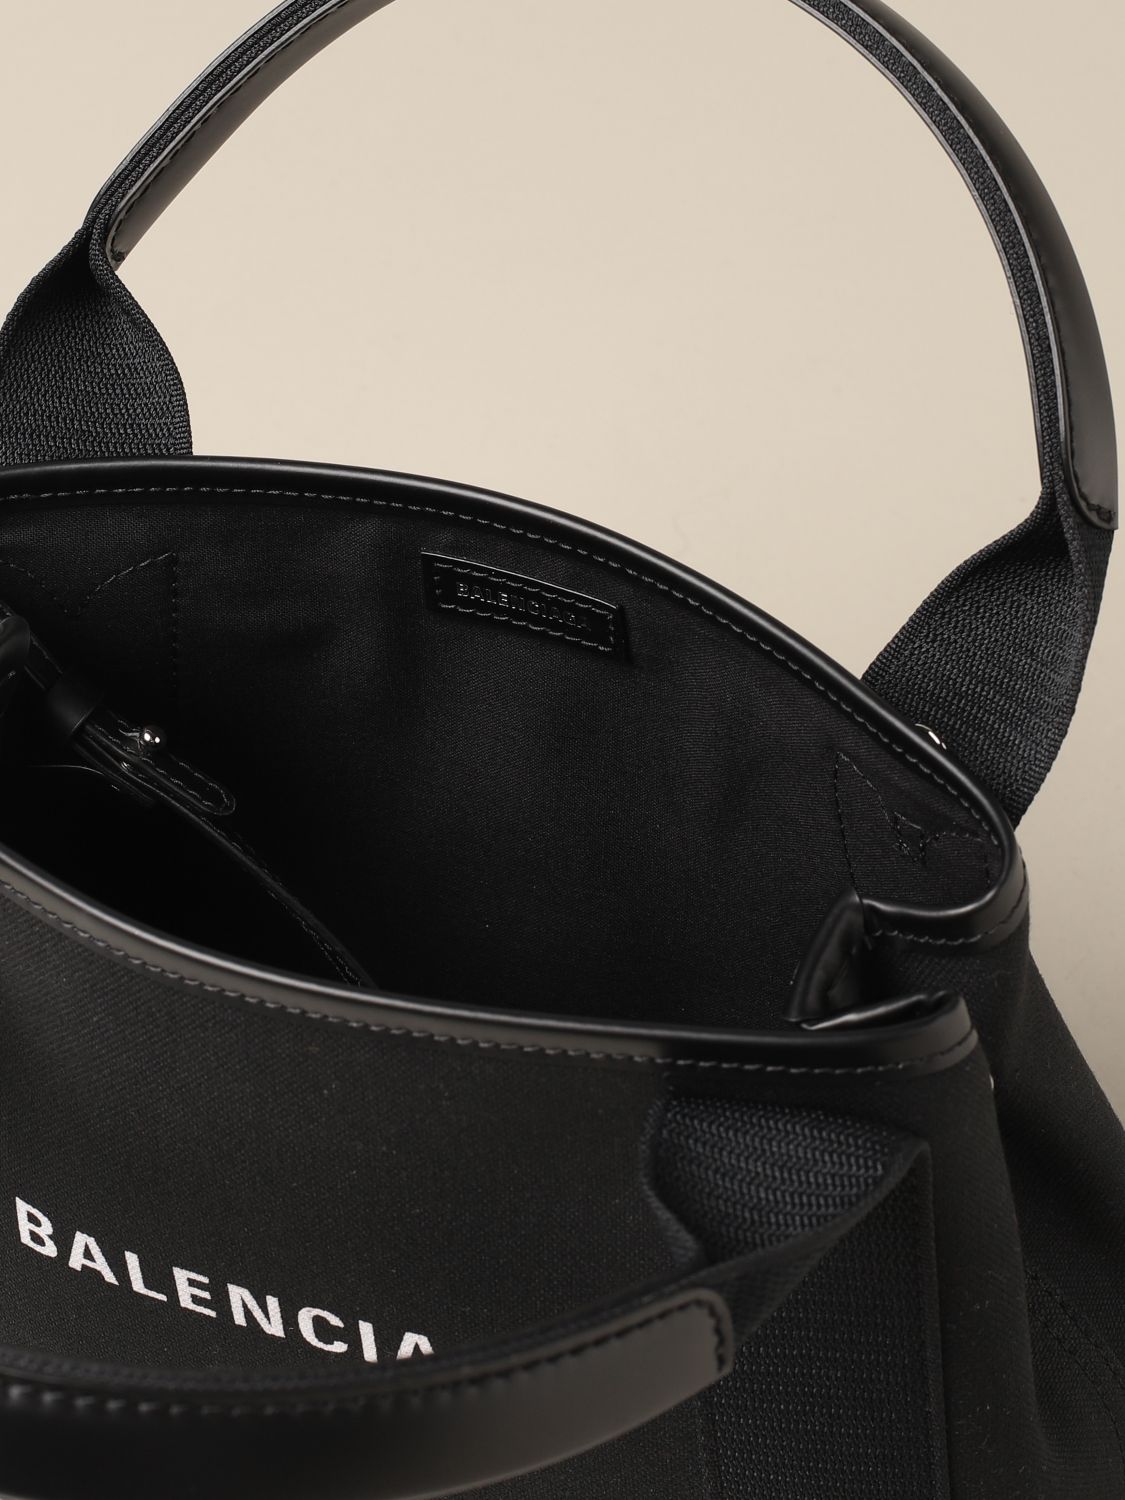 素晴らしい品質の-Balenciaga -• BALENCIAGA バレンシアガ ネイビー